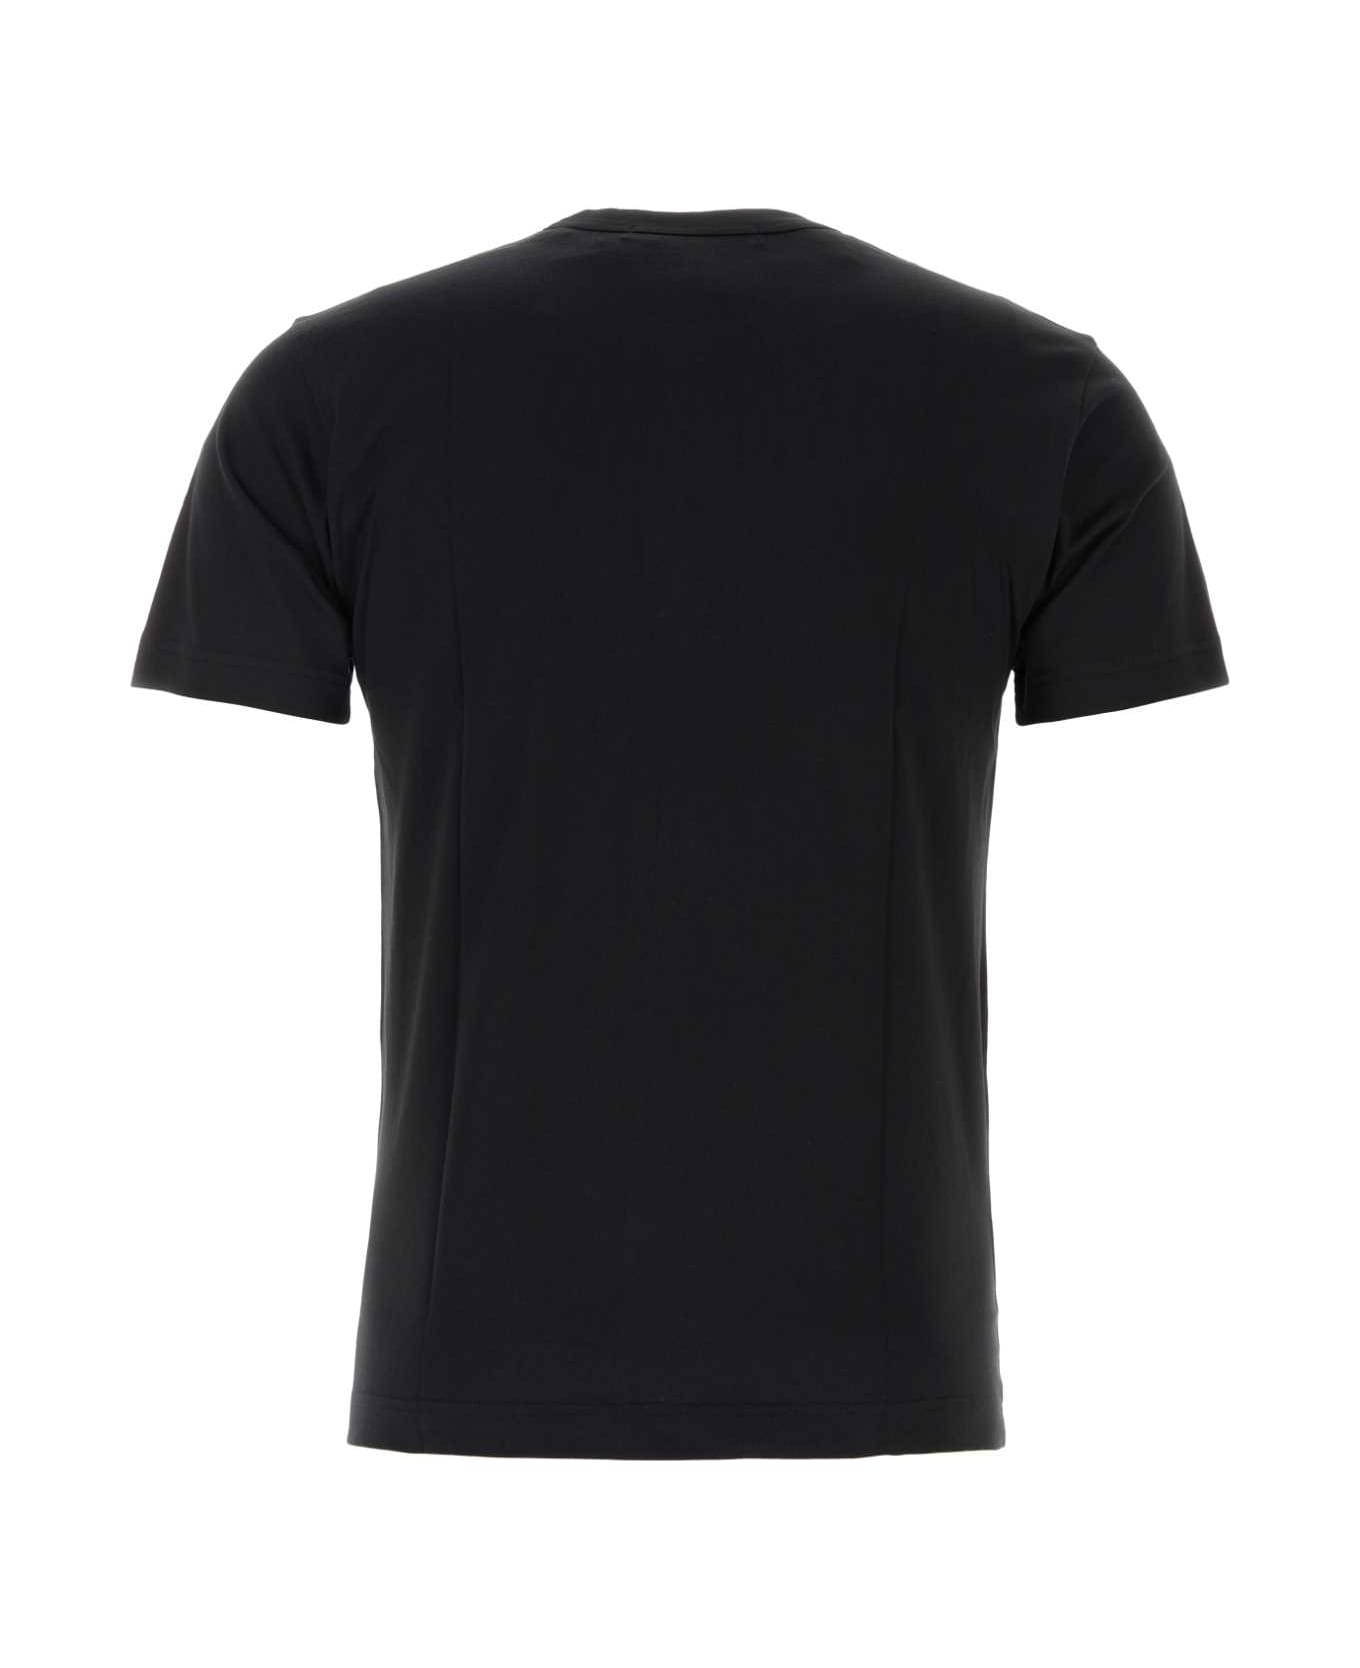 Comme des Garçons Black Cotton T-shirt - BLACK シャツ